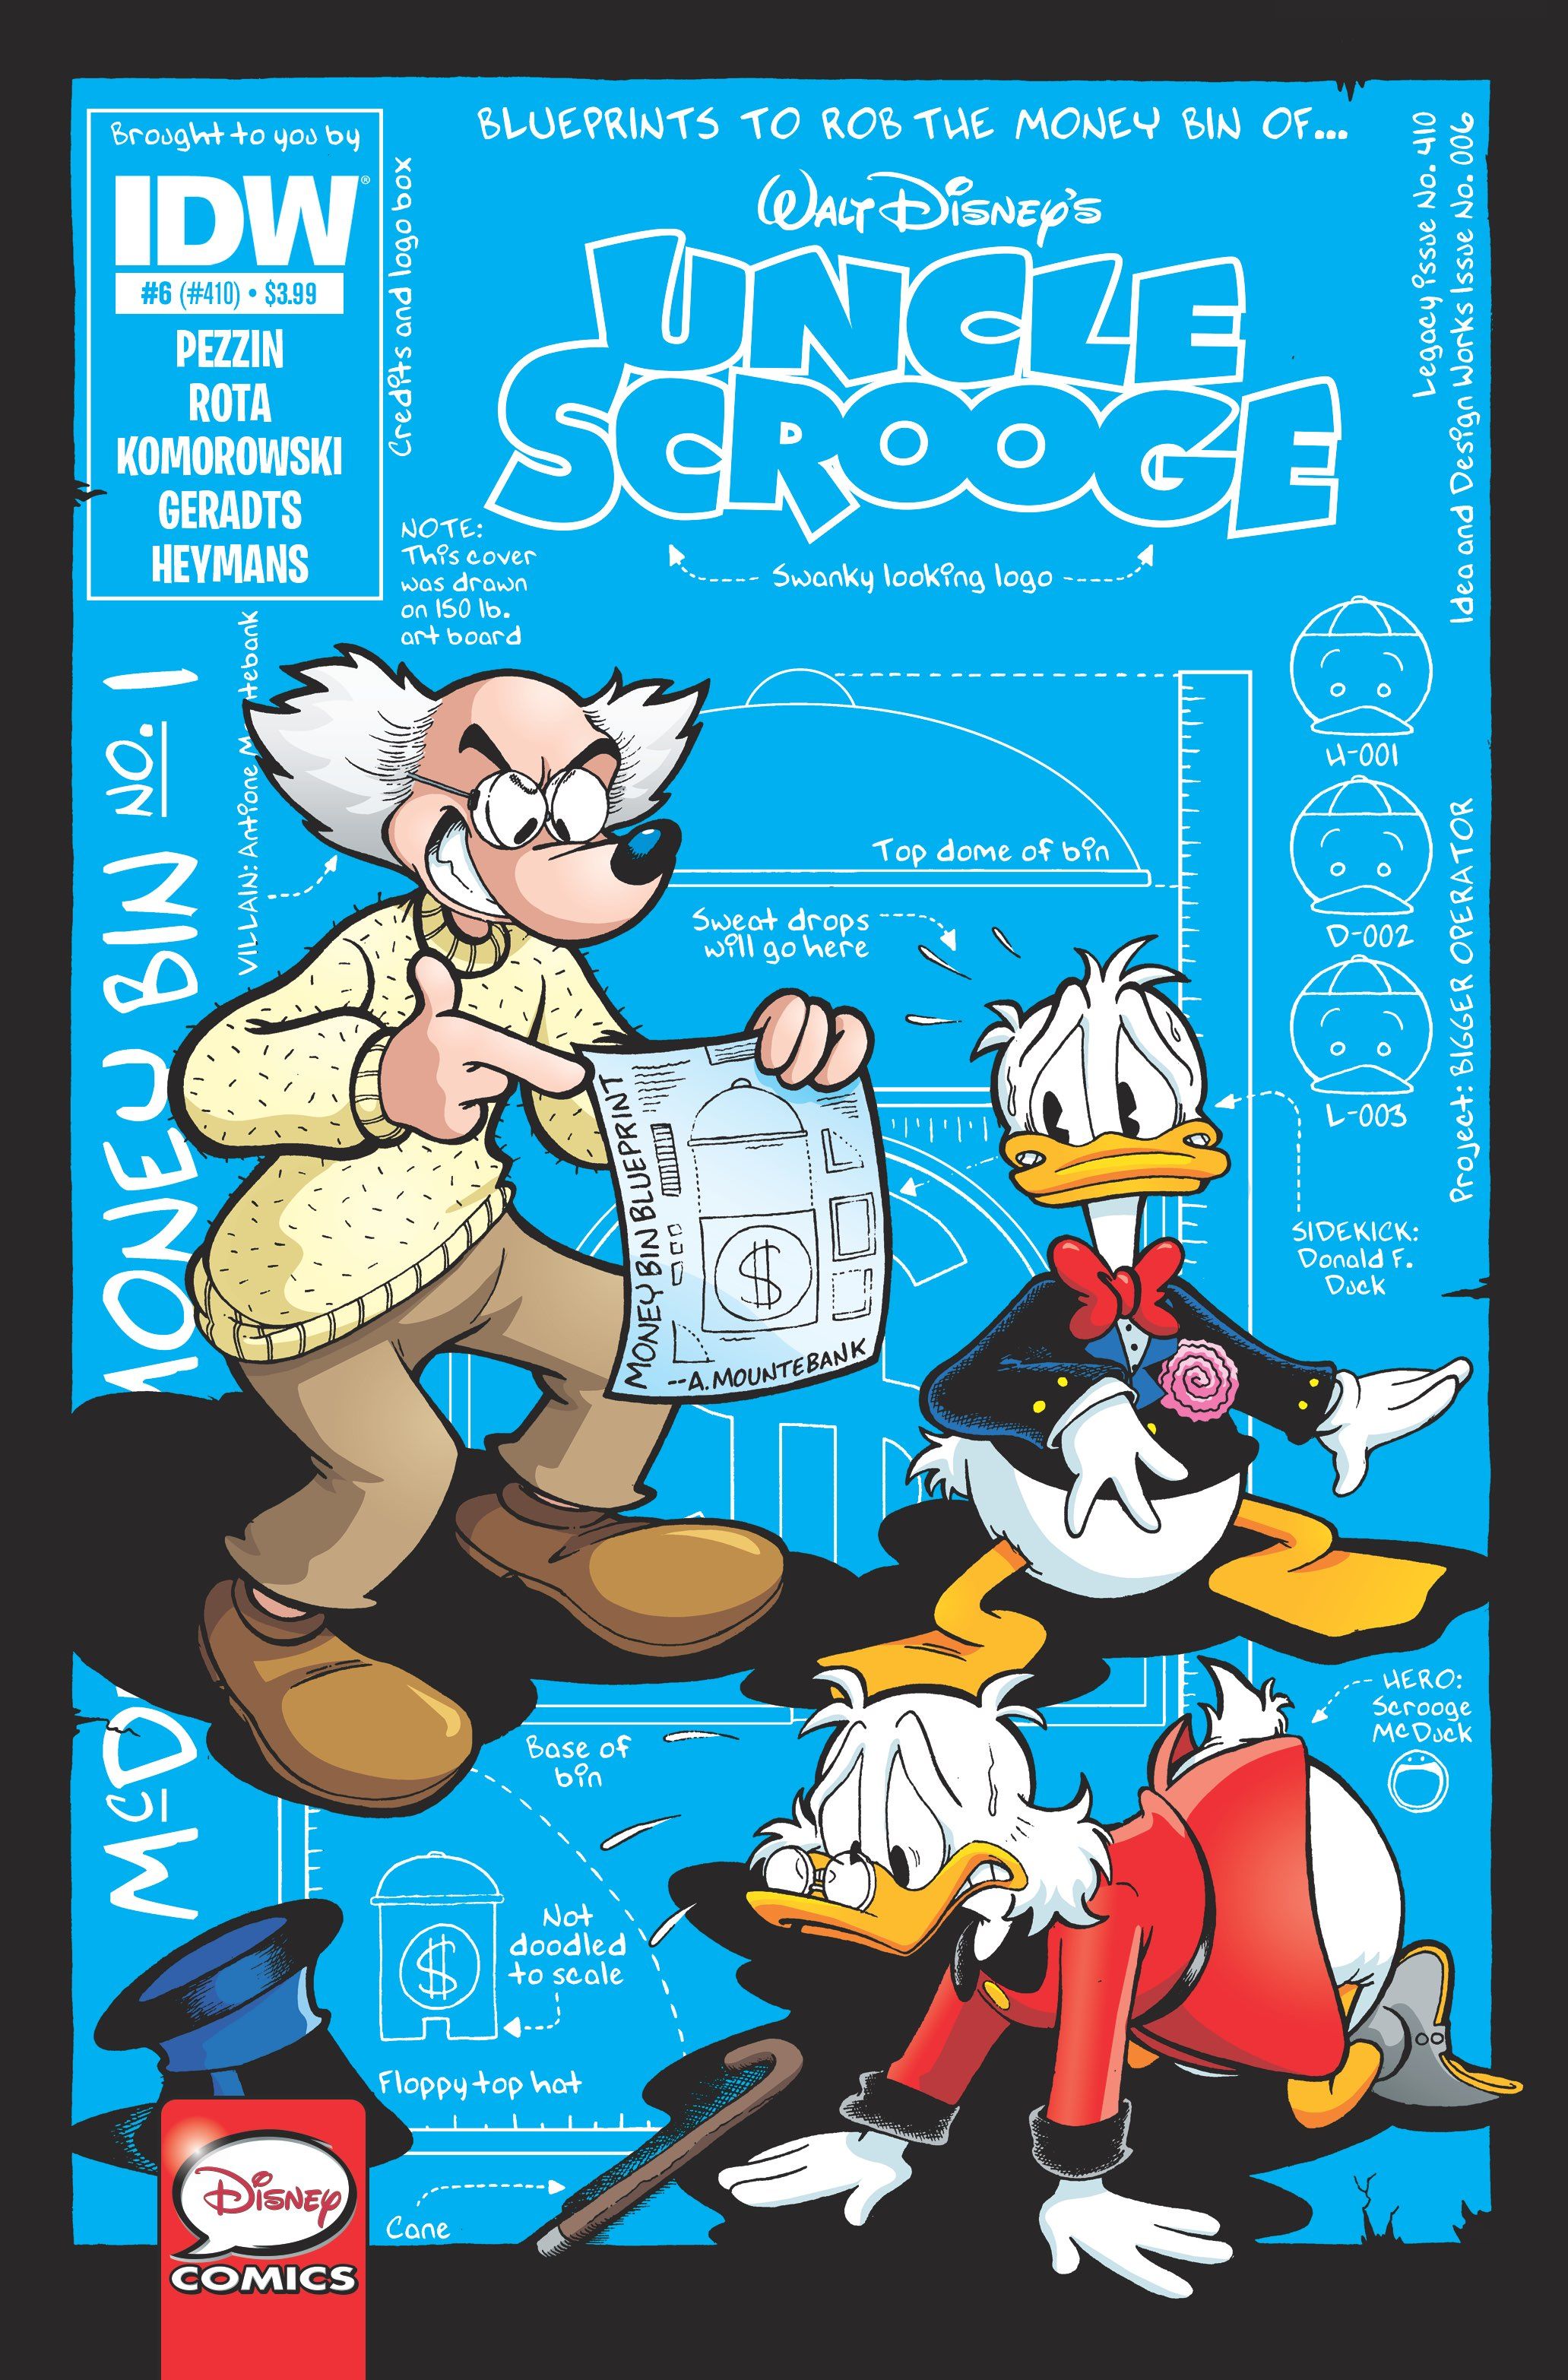 Uncle Scrooge #6 Comic